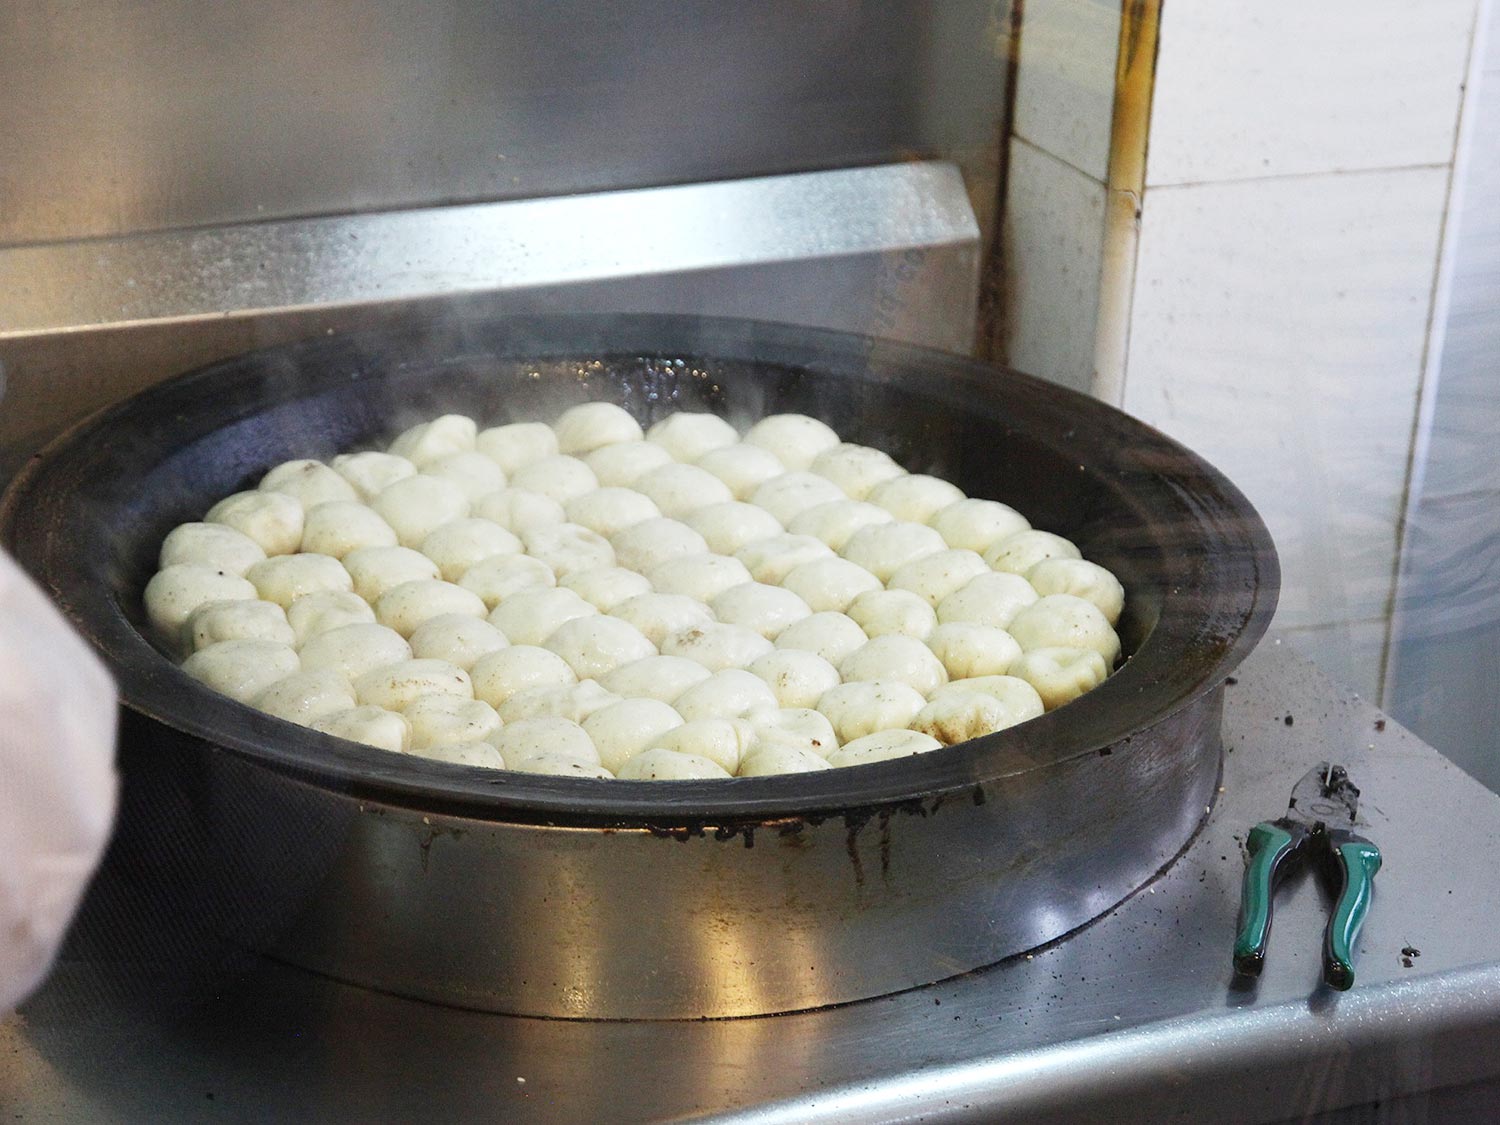 http://kenjilopezalt.github.io/images/20140704-shanghai-restaurants-/dumplings/20140704-shanghai-dumpling-10.jpg